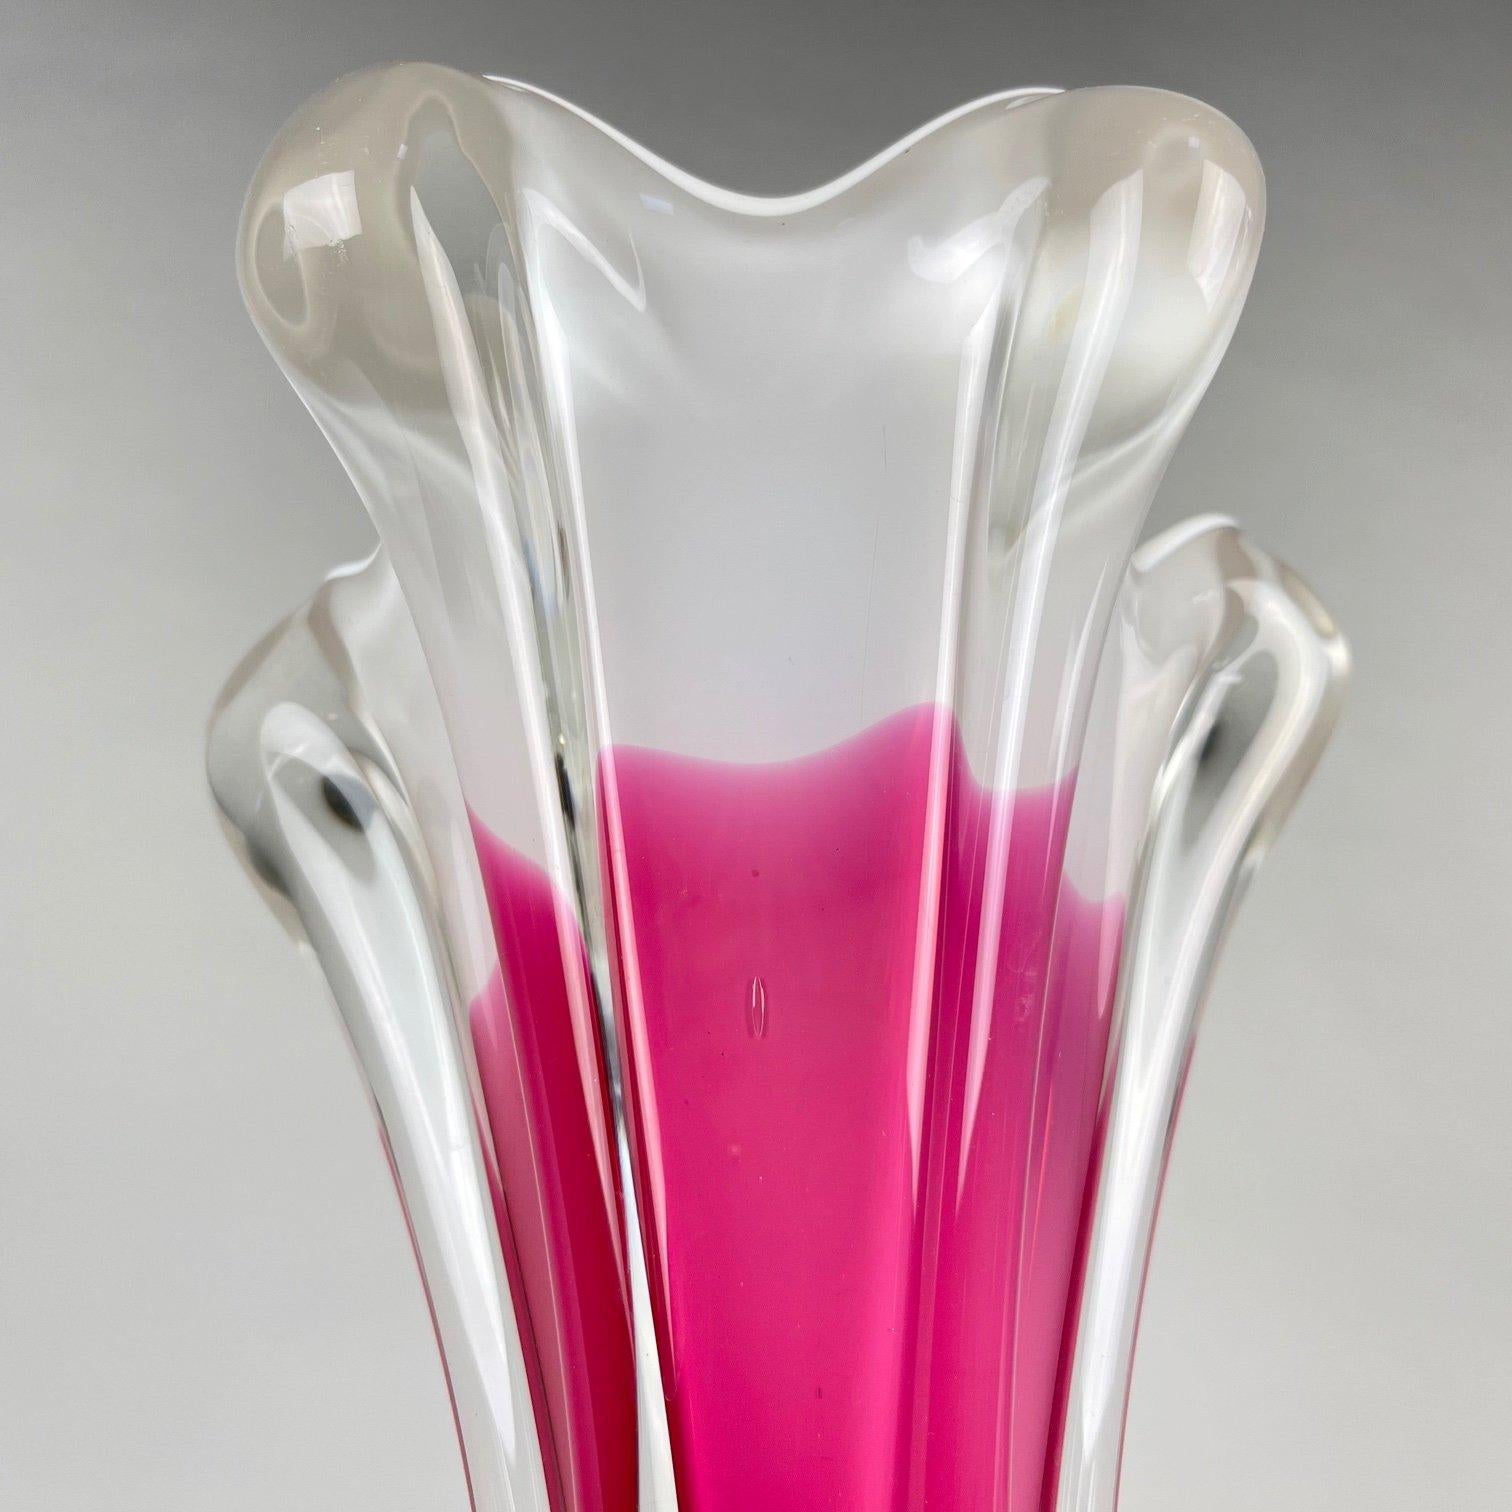 20th Century Tall Art Glass Vase by Josef Hospodka for Chribska Glassworks, 1960's For Sale